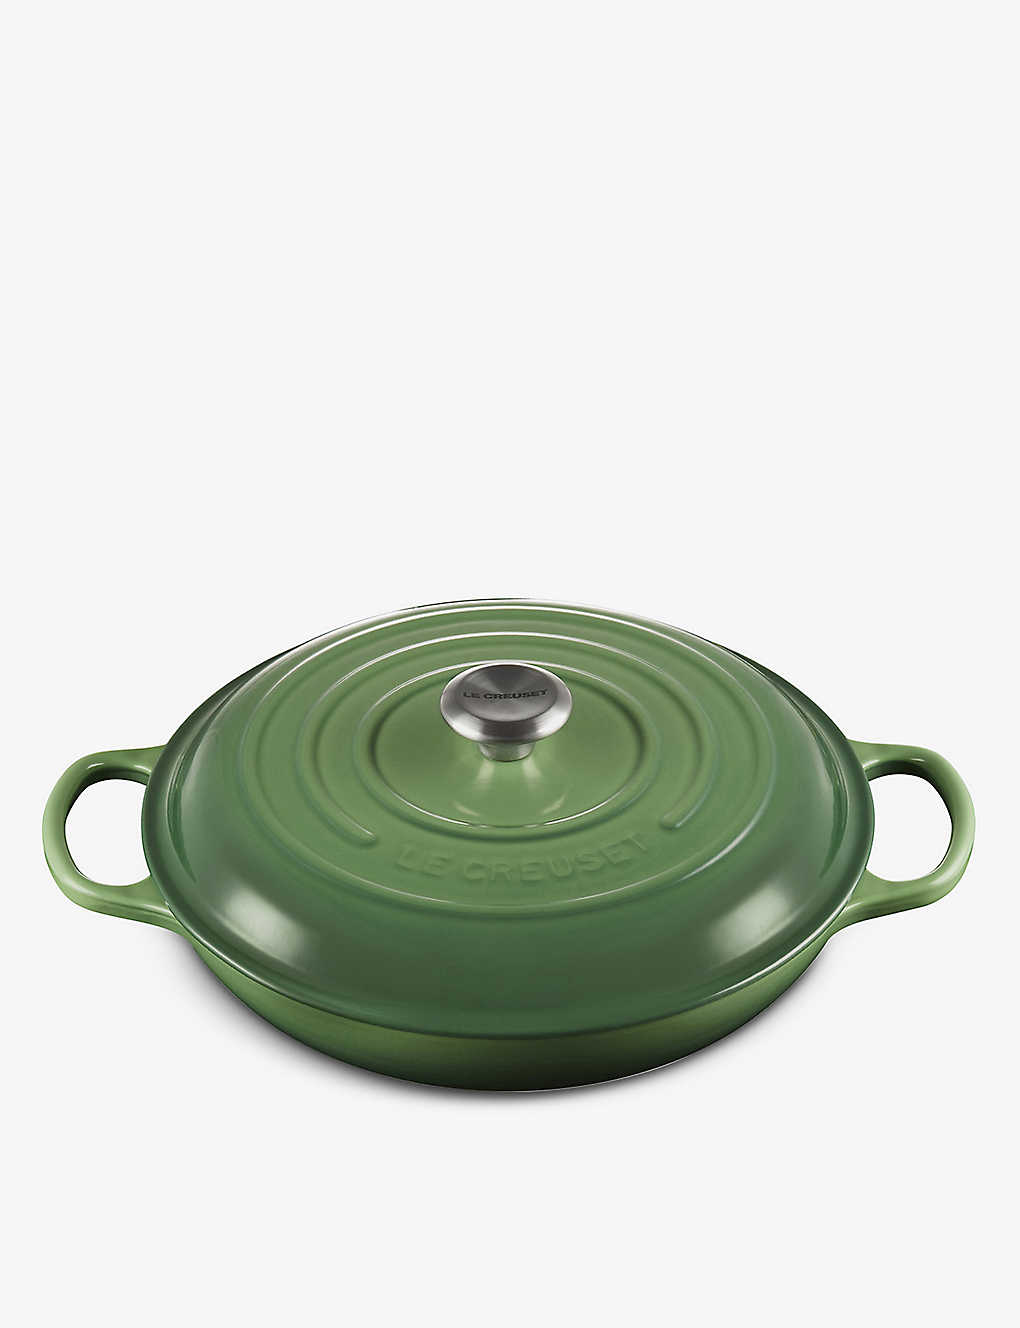 楽天Global HomesLE CREUSET シグネチャー シャロー キャストアイアン キャセロールディッシュ 26cm Signature shallow cast-iron casserole dish 26cm BAMBOO GREEN